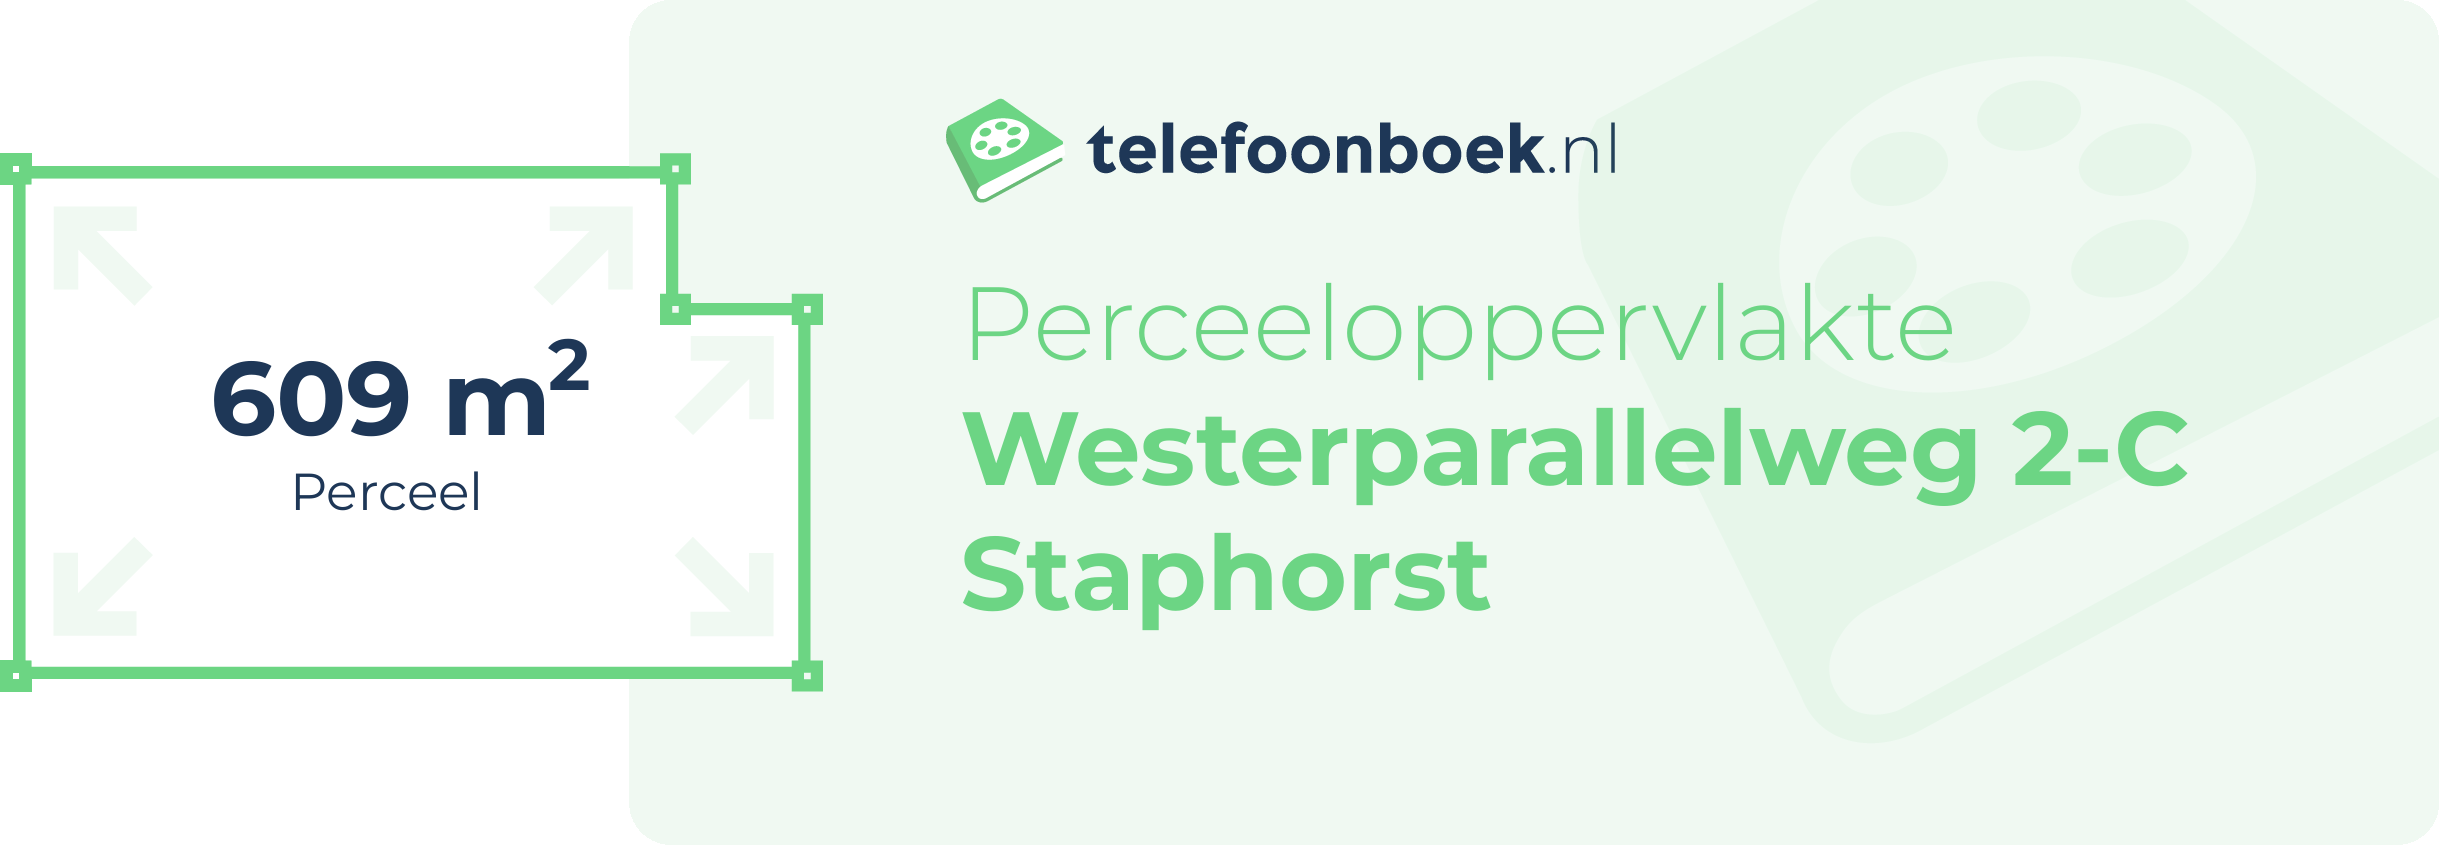 Perceeloppervlakte Westerparallelweg 2-C Staphorst